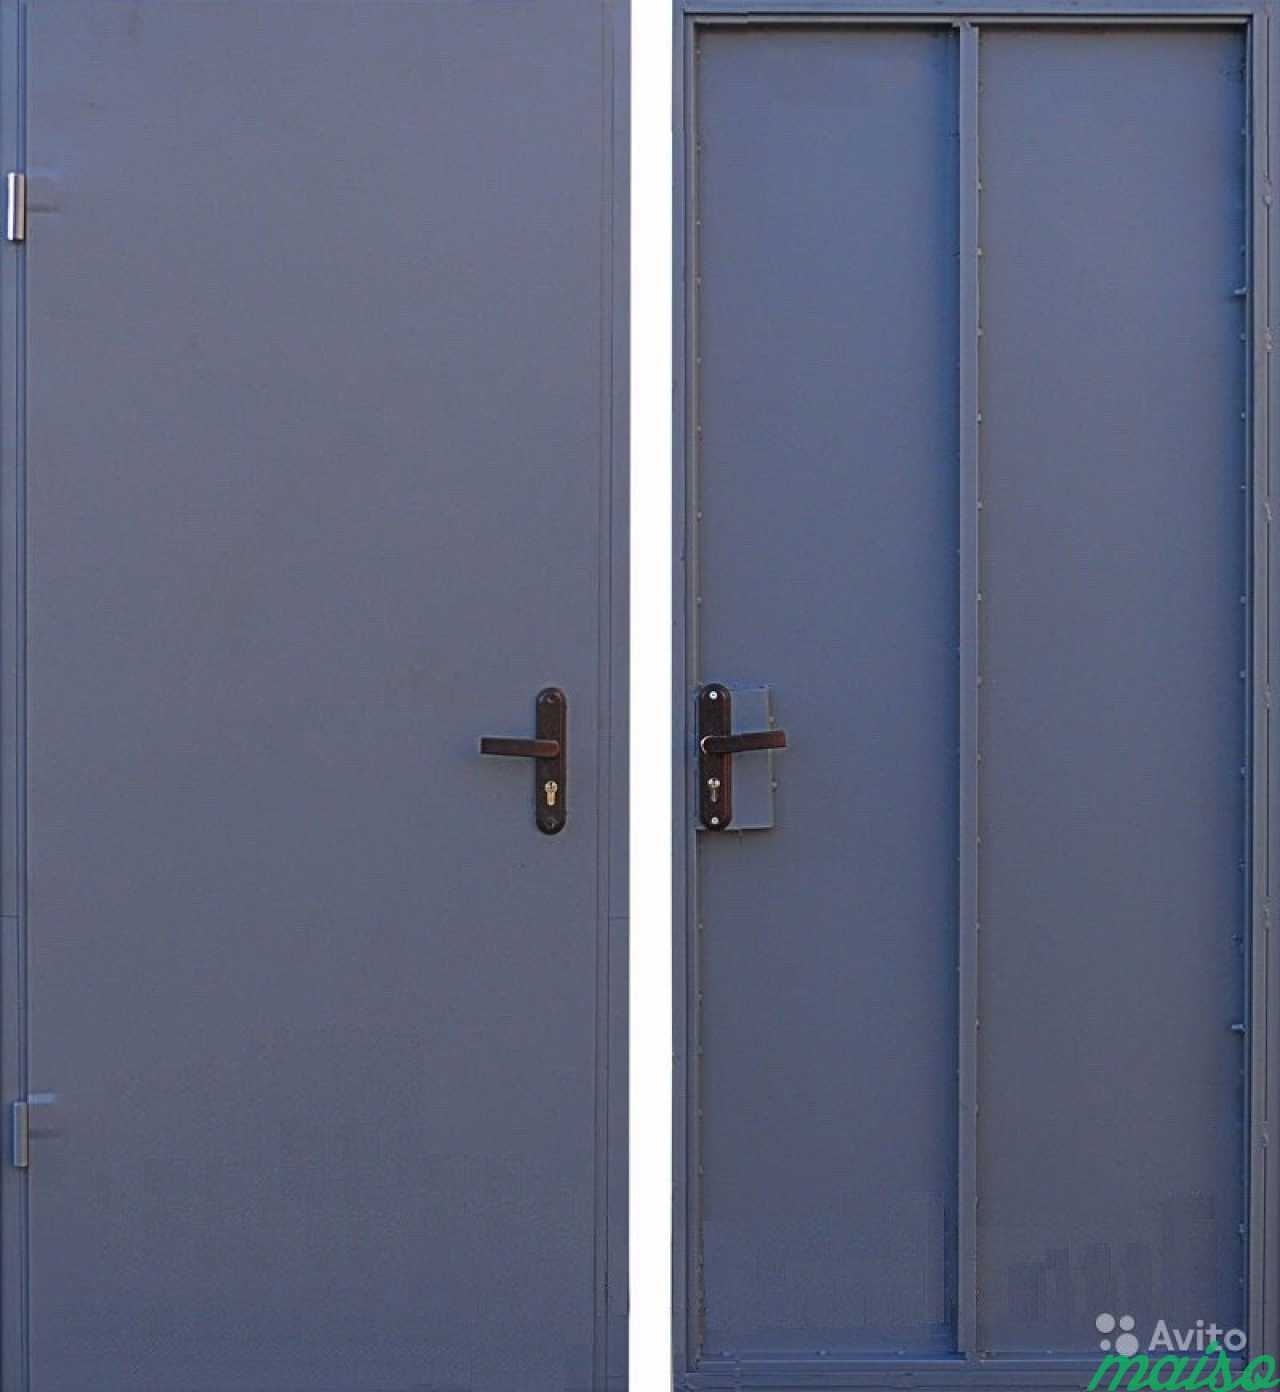 Двери железные метр. Дверь стальная 2дсу 2.02.1. Двери стальные утепленные двупольные 2дсу 2.02.1. Технические двери металлические металл 1.2 мм 600х1000. Дверь однолистовая техническая.